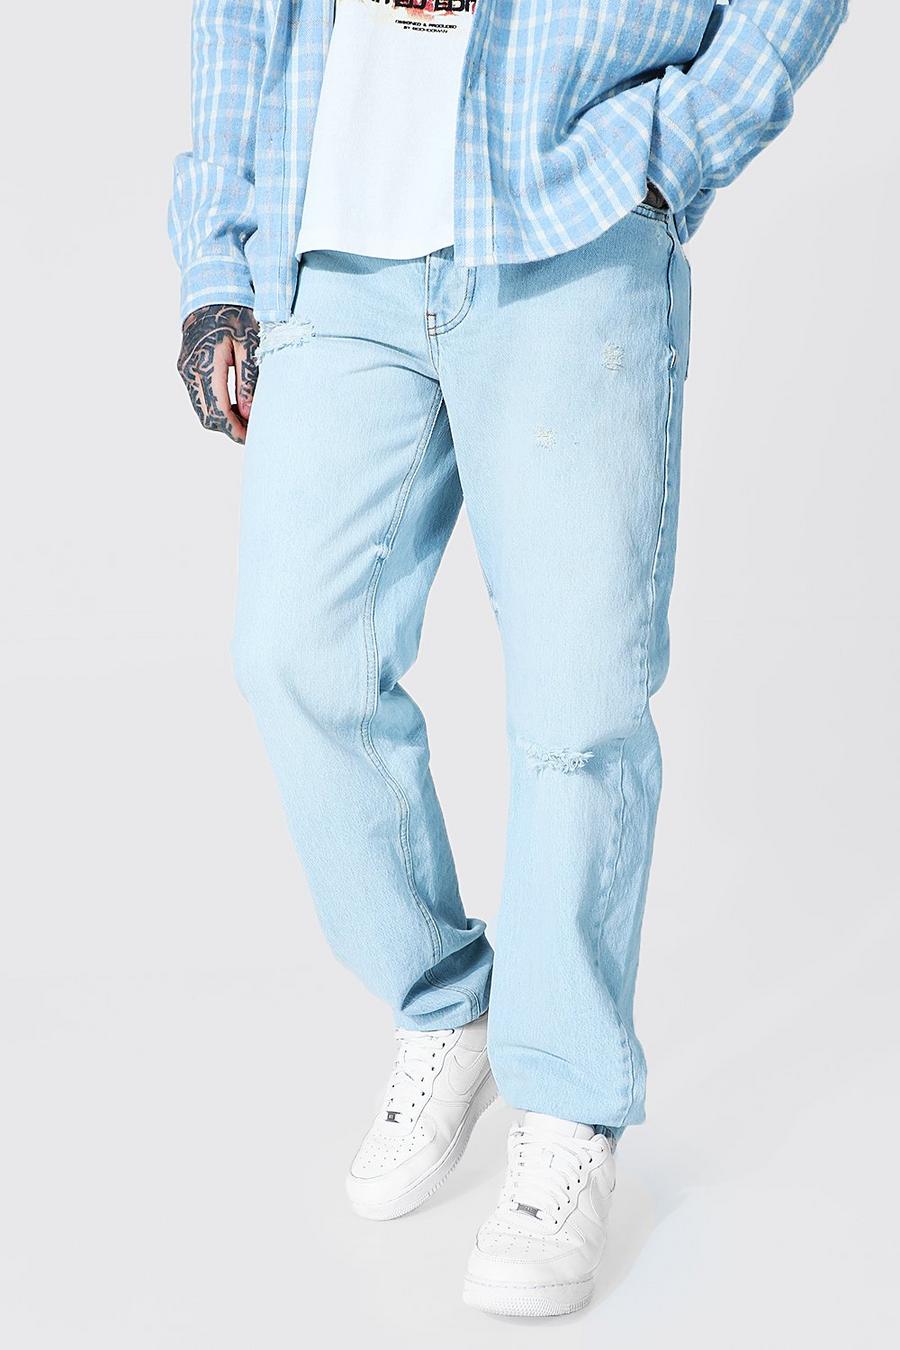 Lockere Jeans mit Riss am Knie, Ice blue